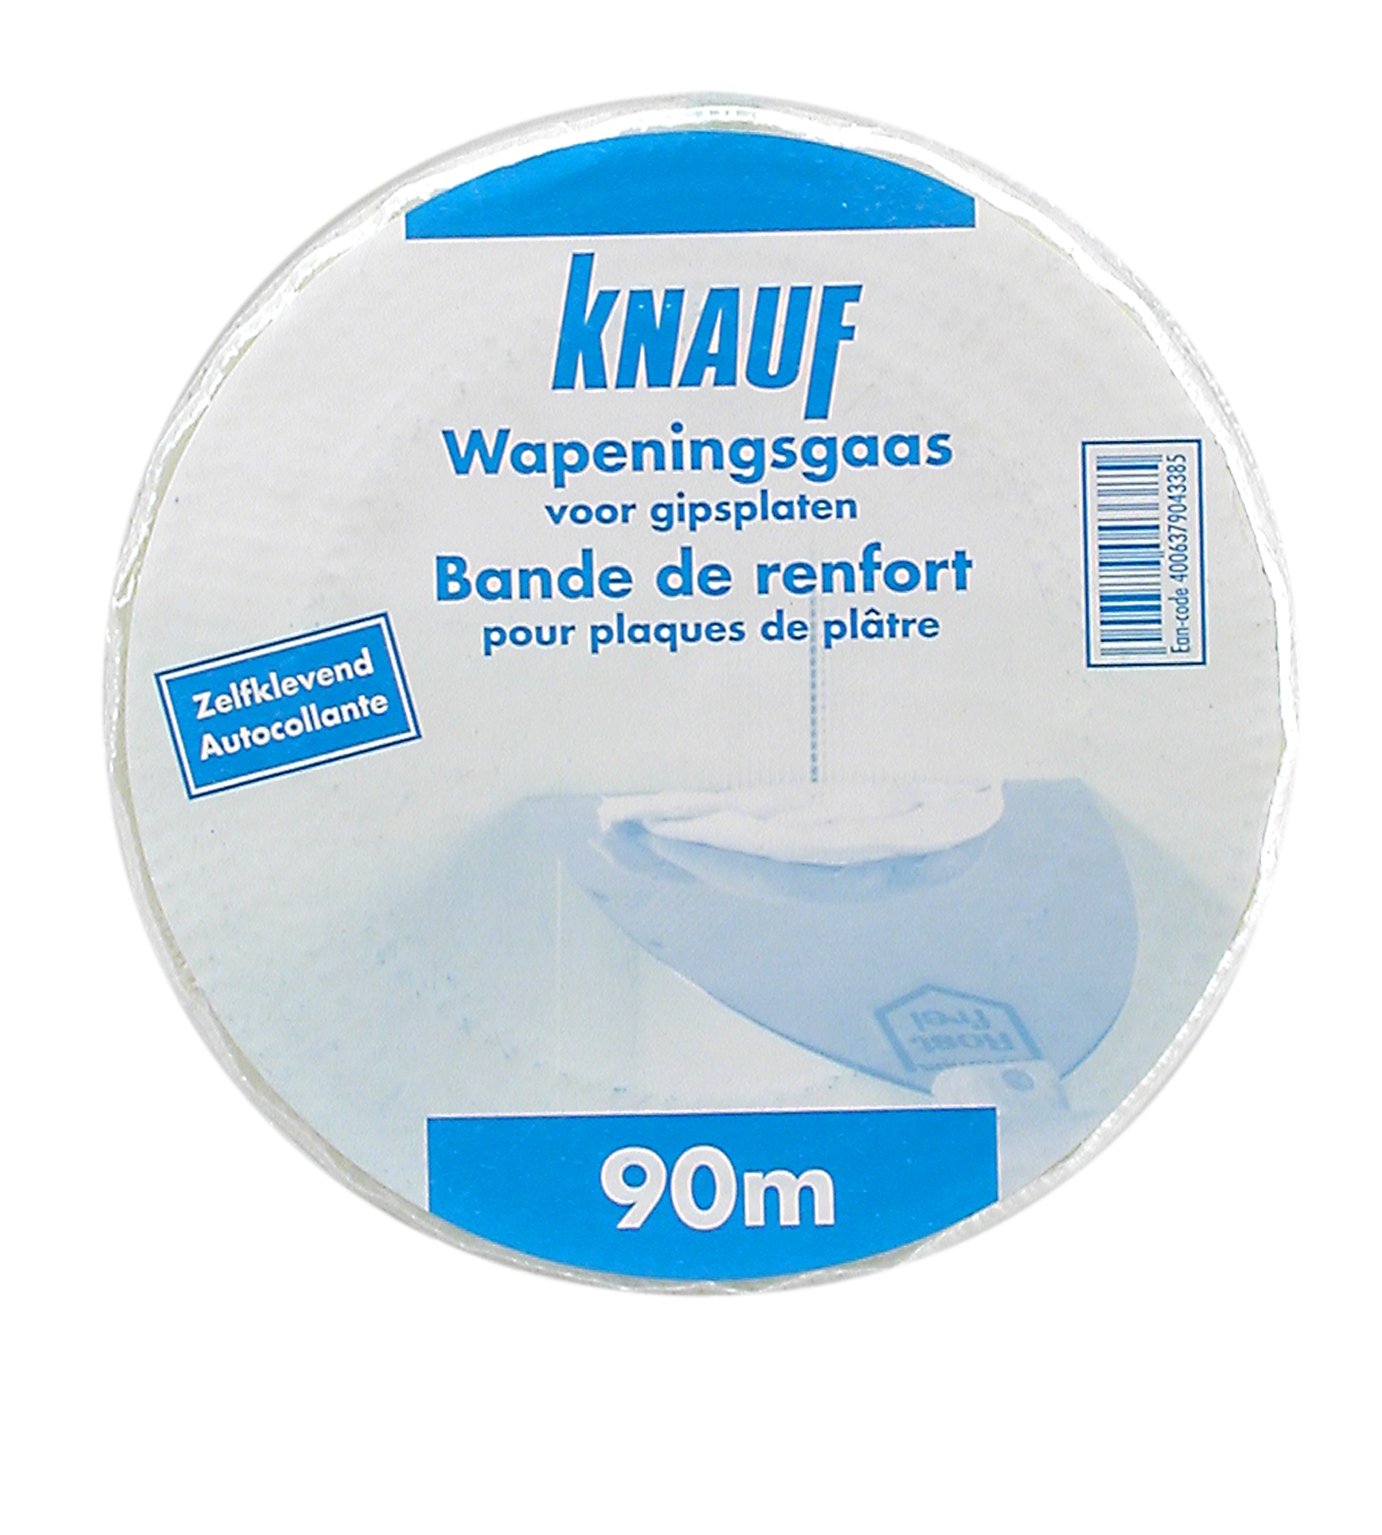 Bande à joint autocollante en fibre de verre pour plaques de plâtre - Pose  facile et rapide - Fibatape (90m ou 153m)